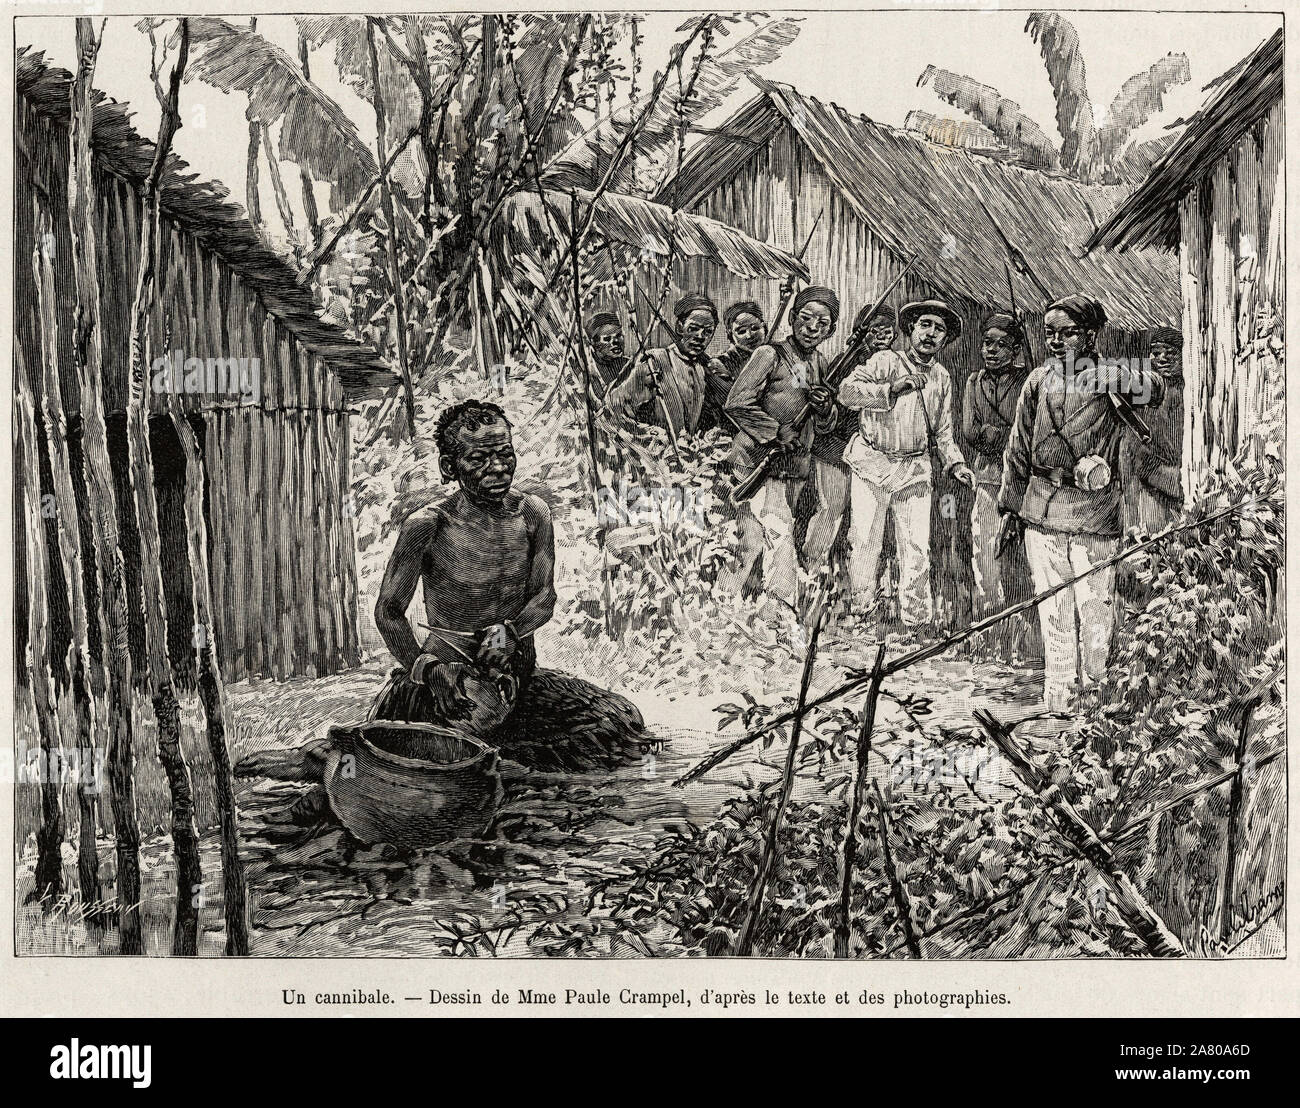 La mission d'exploration rencontre un cannibale. Gravure de Paule Crampel (1864-1964) pour illustrer le recit 'La mission Crampel', par Albert Nebout Stock Photo